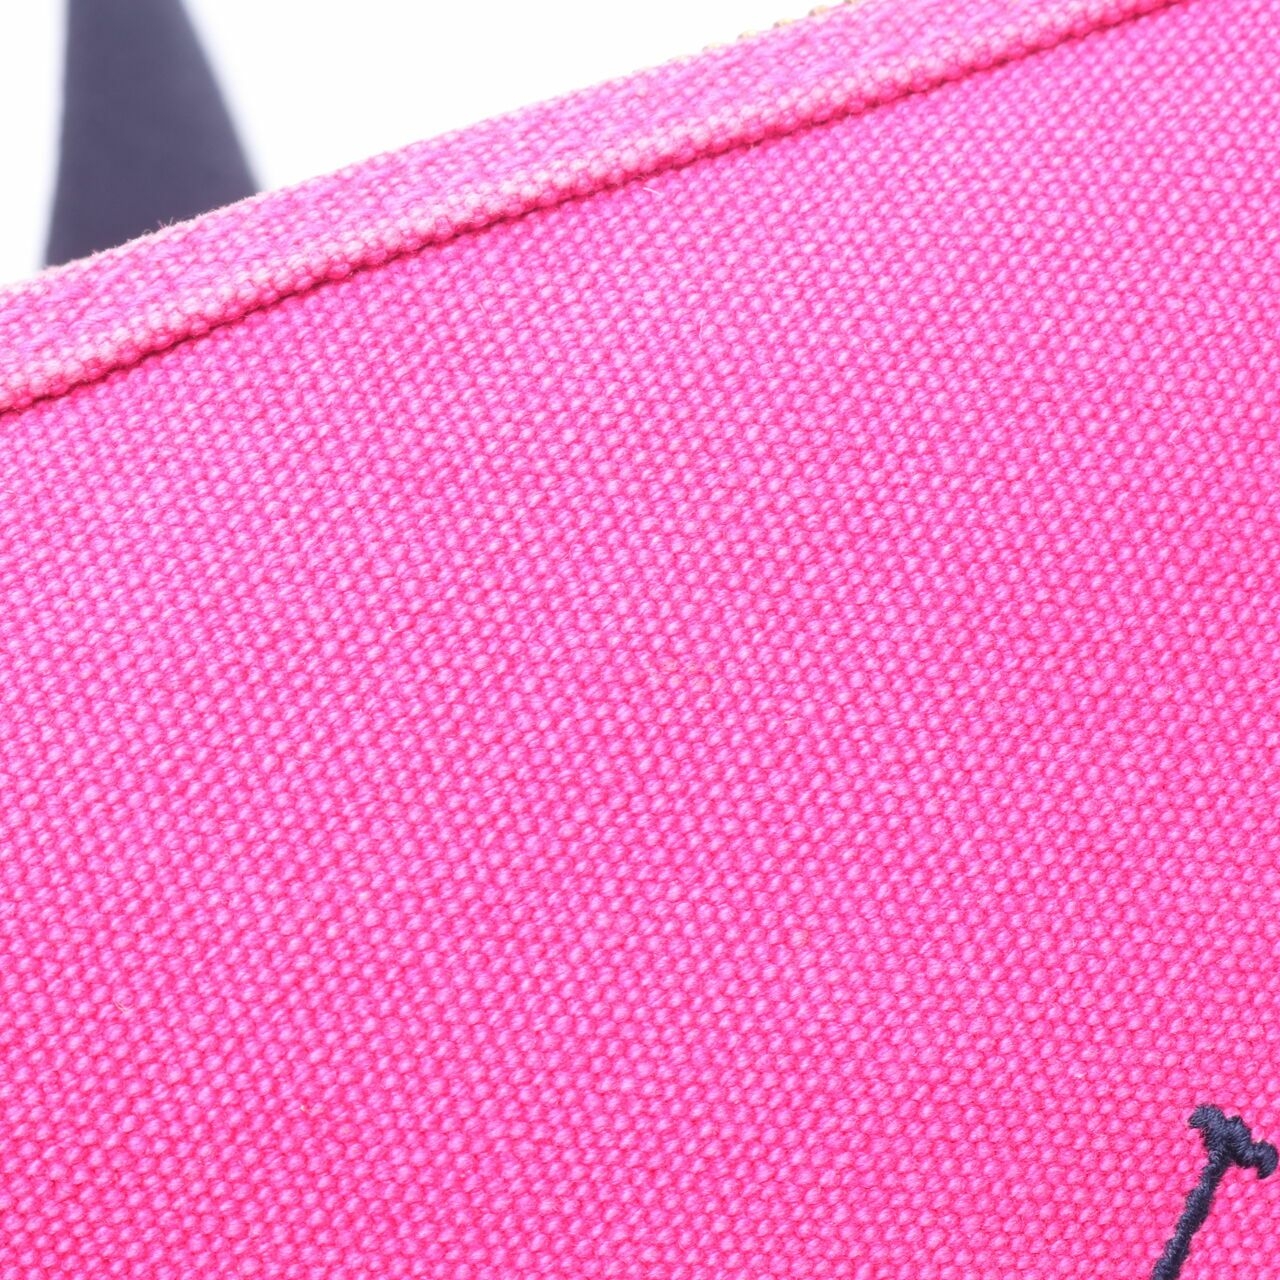 Ralph Lauren Pink Sling Bag